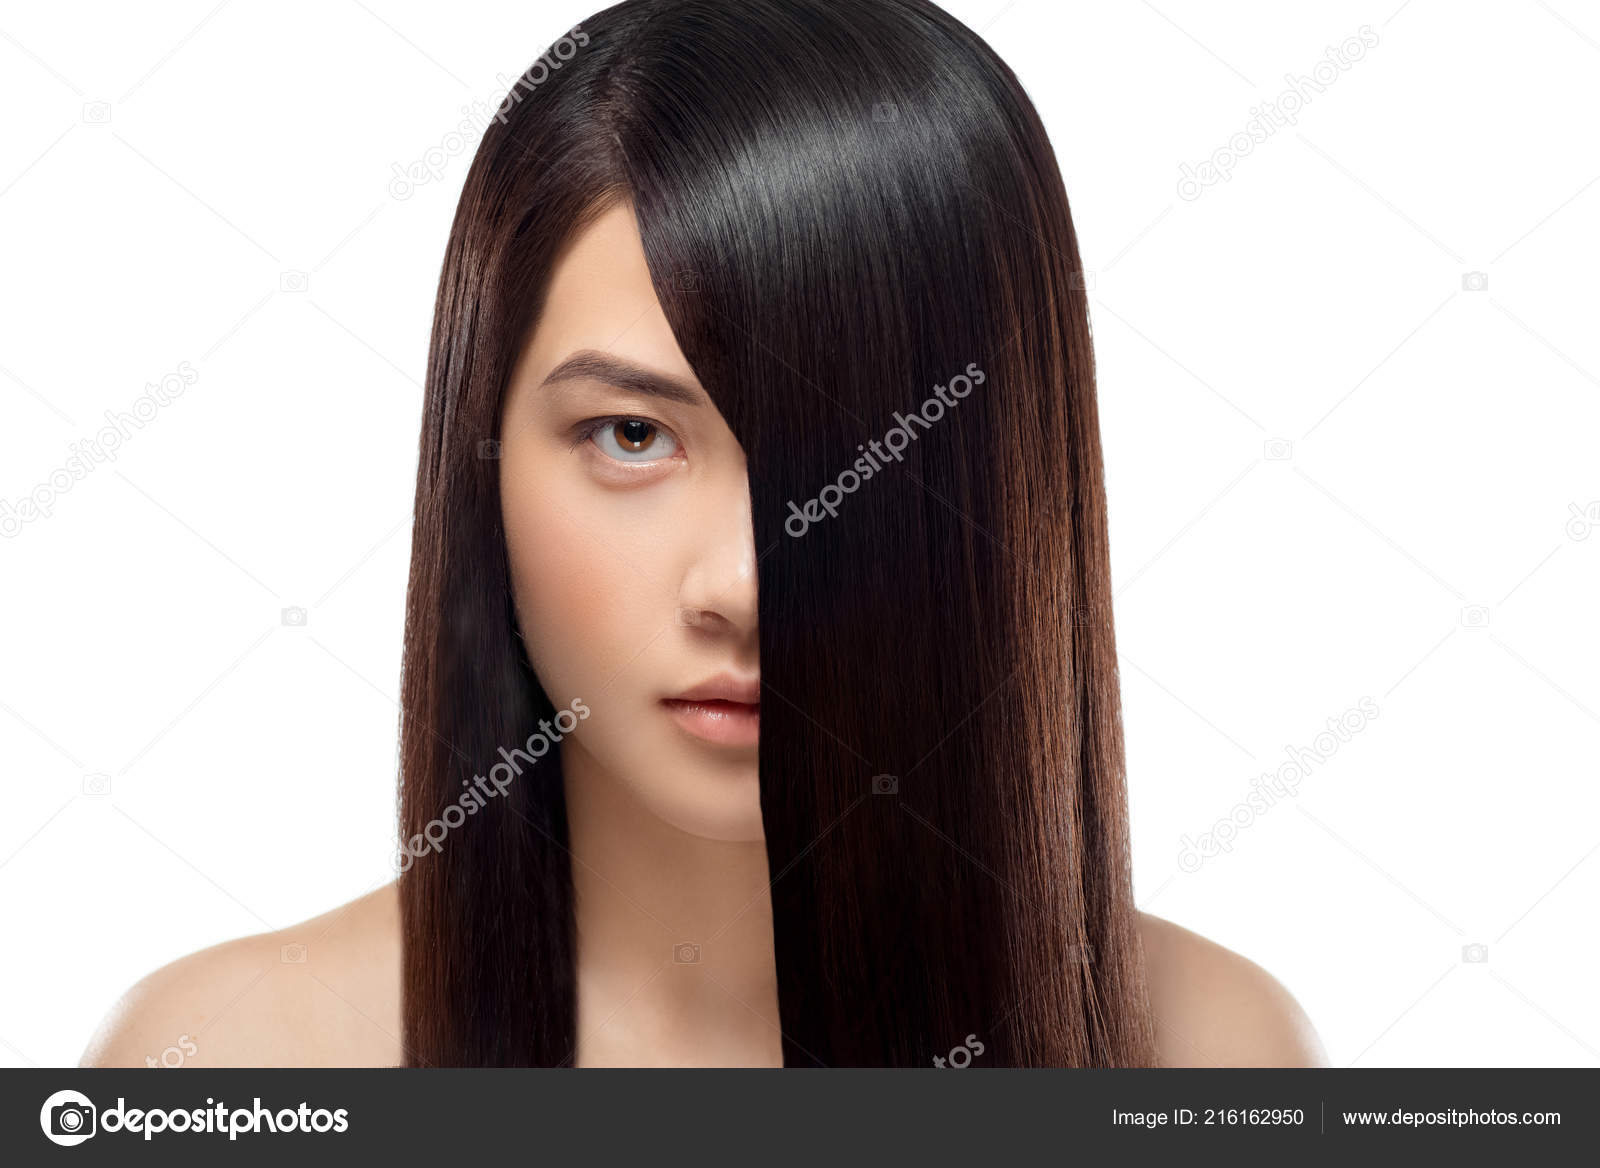 60 HQ Pictures Asian Hair Model / A Asian Woman Short Hair Model Confidence Action On Blue Lizenzfreie Fotos Bilder Und Stock Fotografie Image 149177244